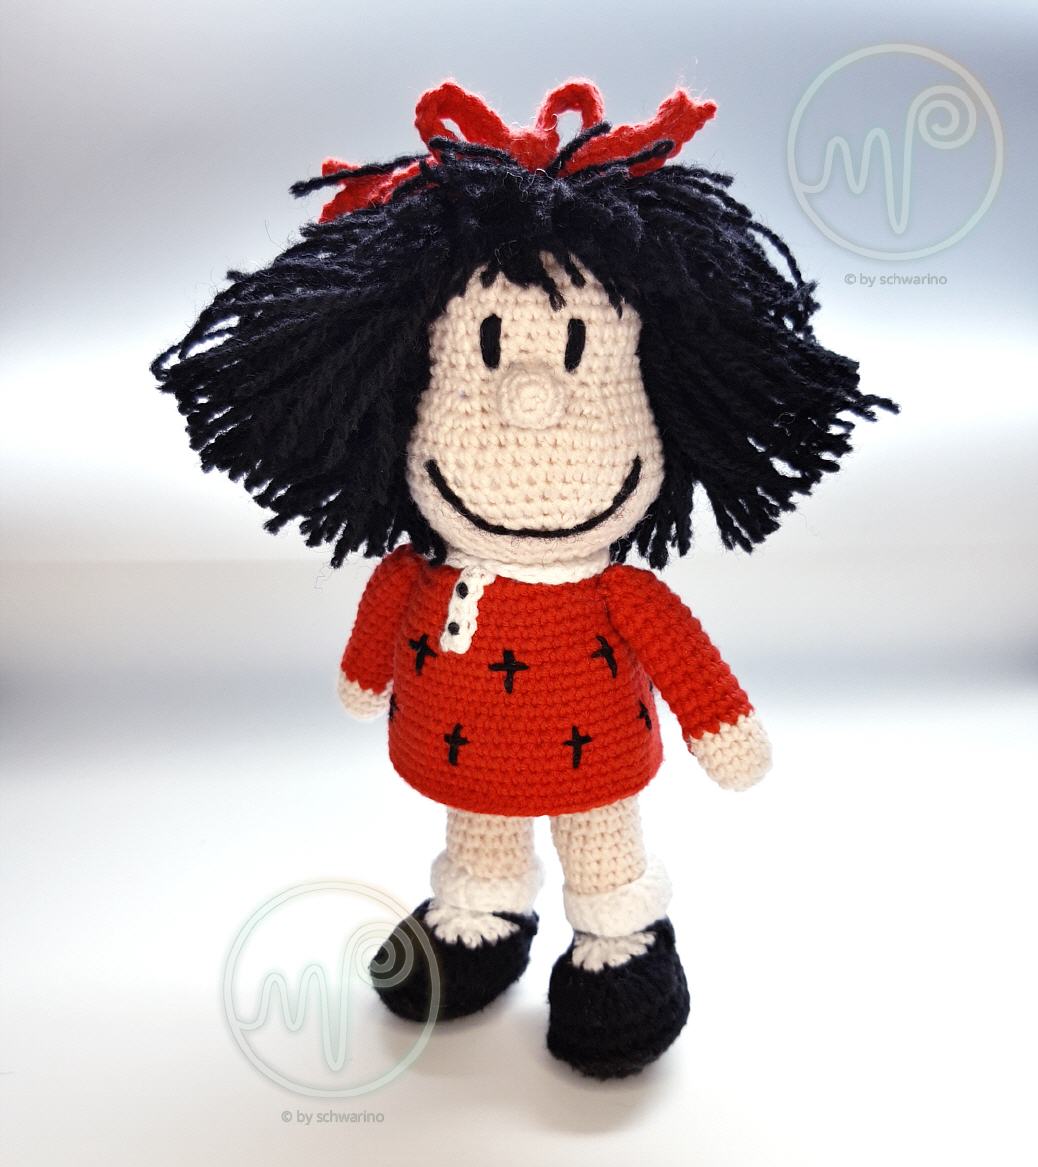 Mafalda (Comicfigur © by Quino)